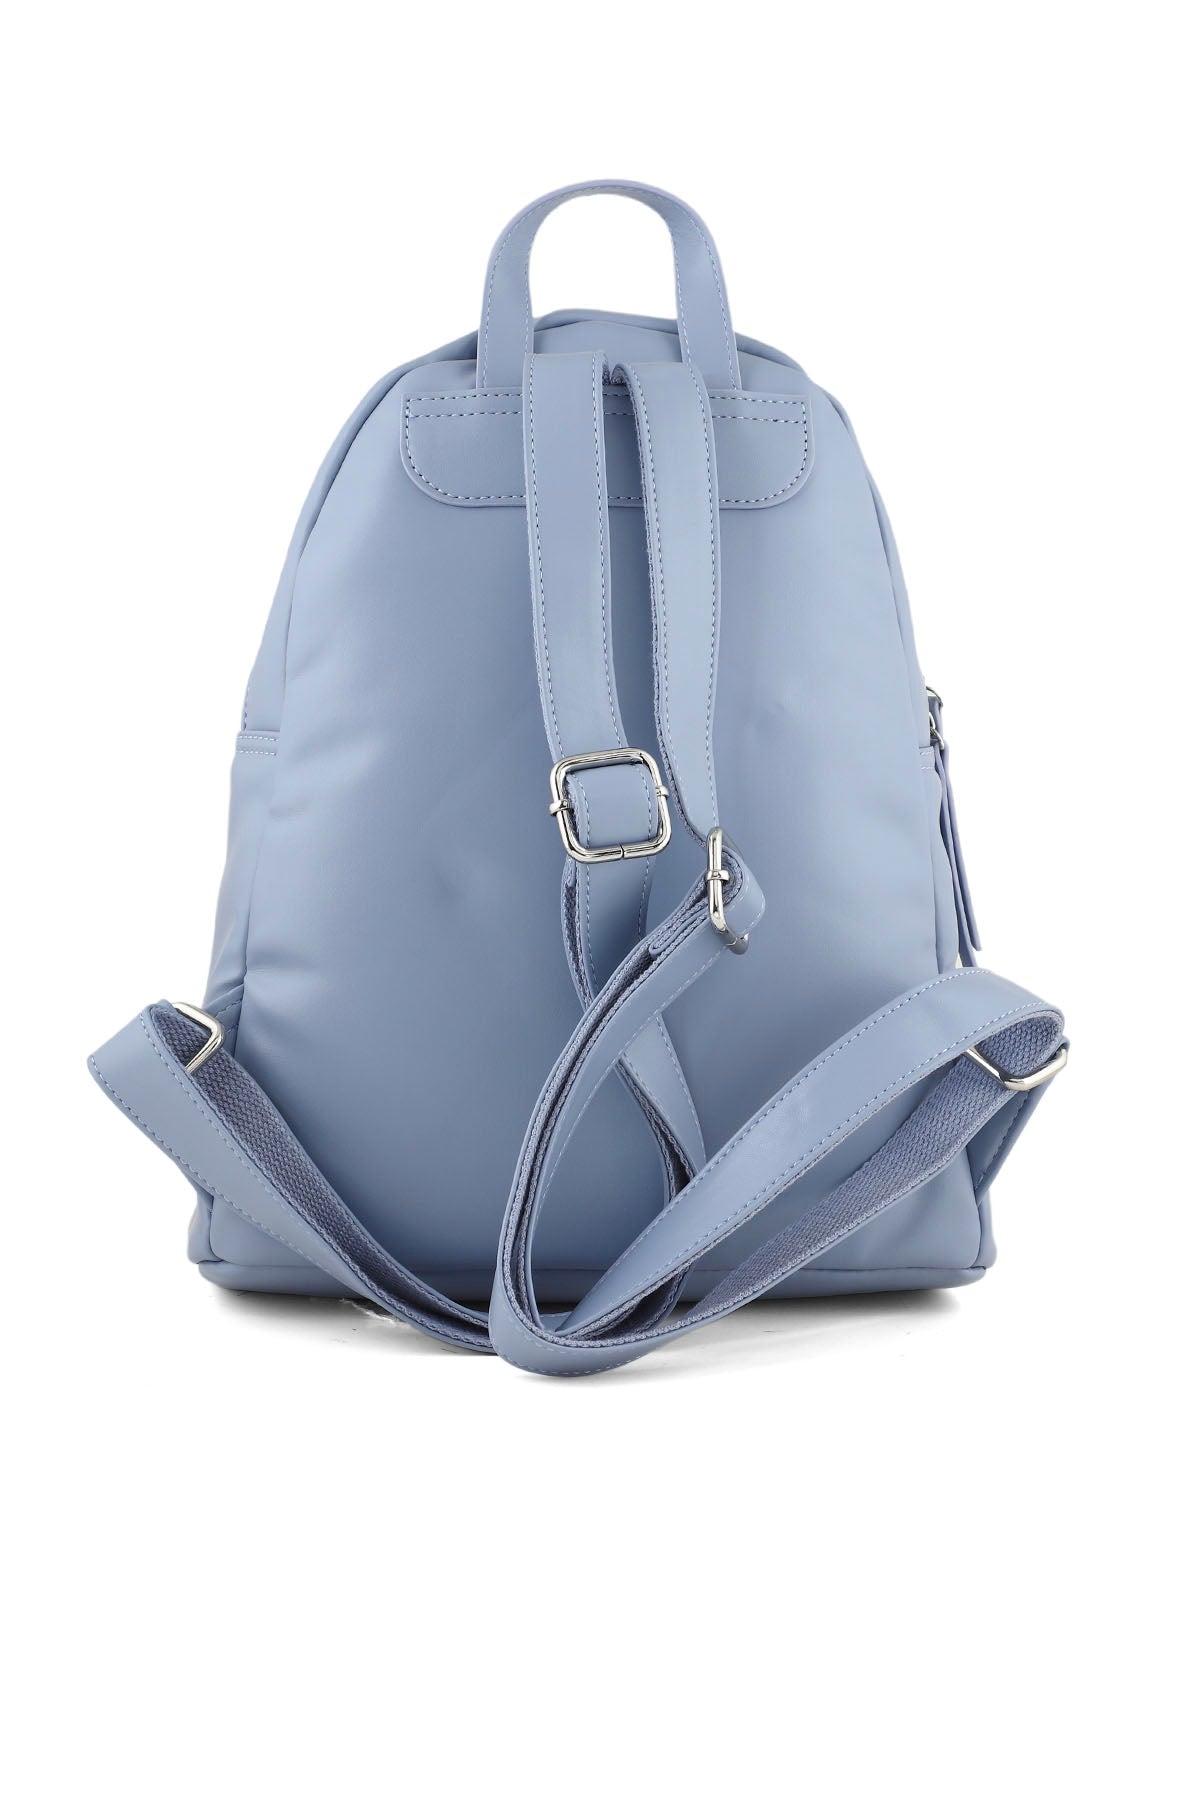 Backpack B15019-Blue